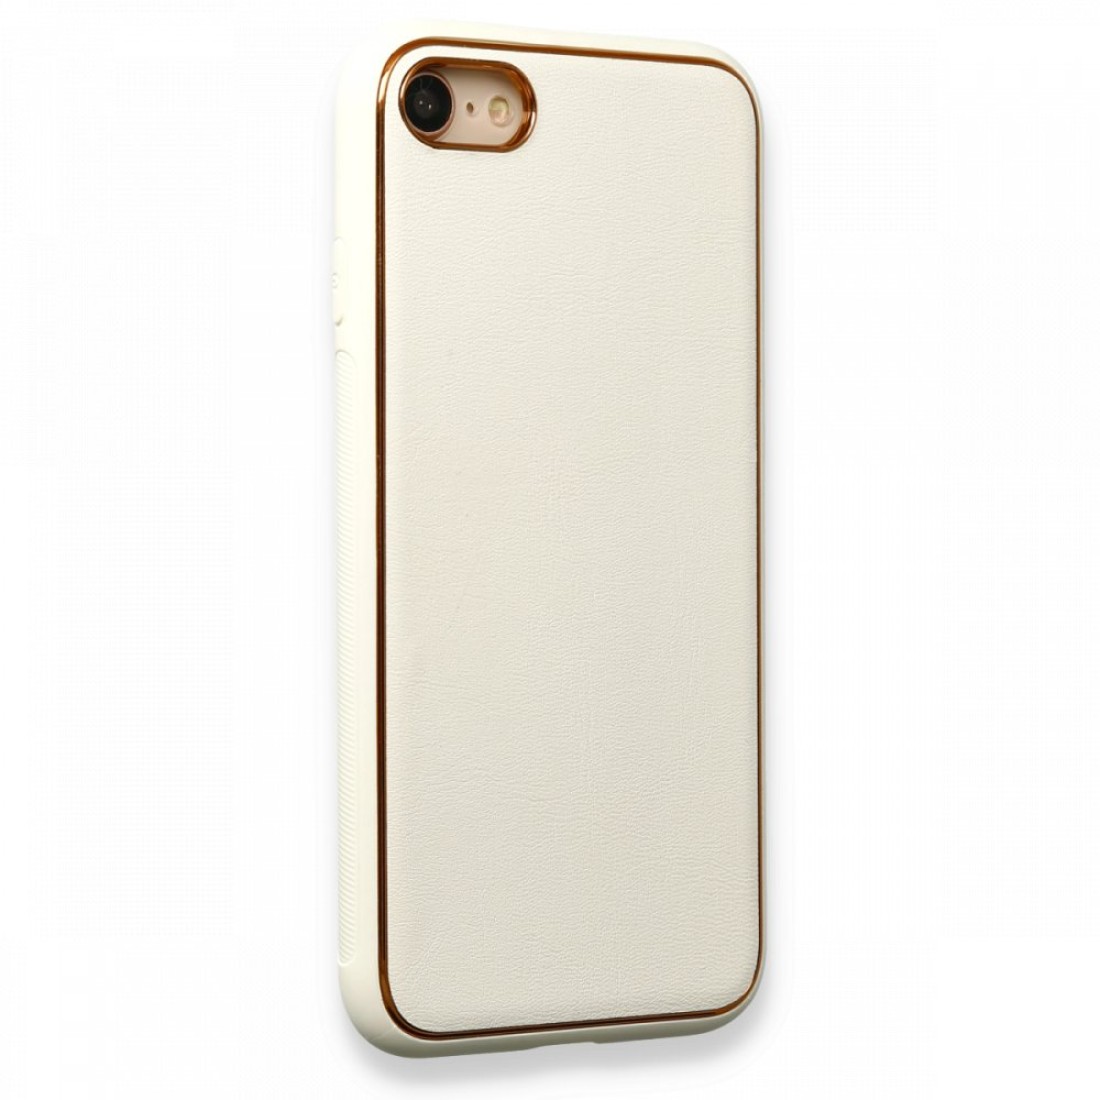 Apple iPhone 8 Kılıf Coco Deri Silikon Kapak - Beyaz